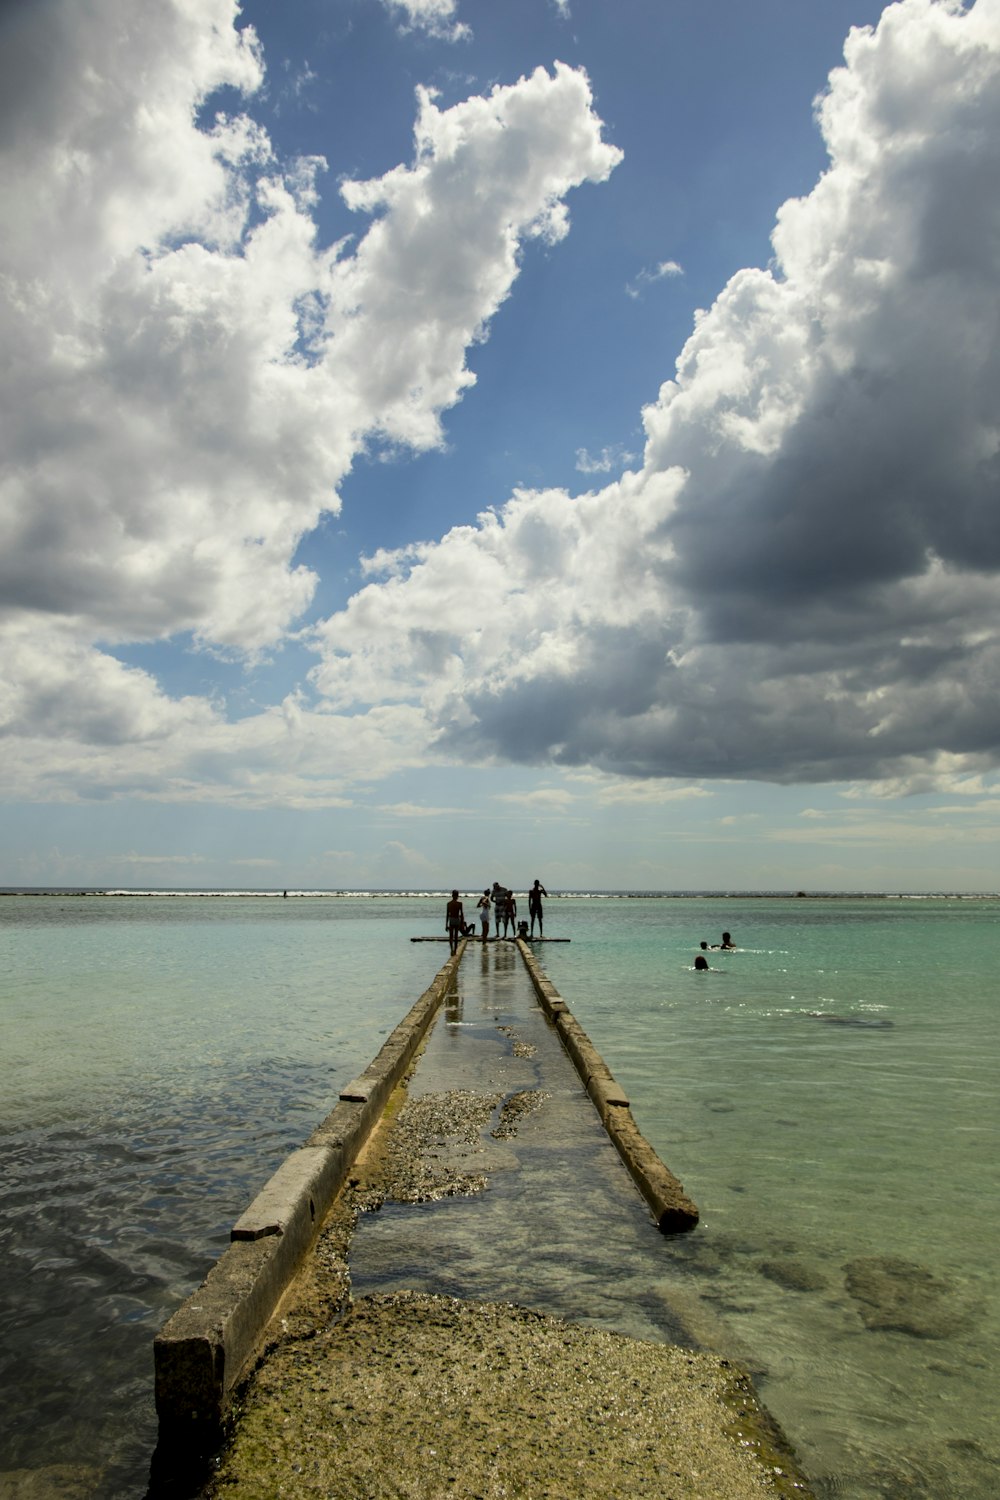 Persone che camminano sul molo di legno sotto il cielo nuvoloso blu e bianco durante il giorno